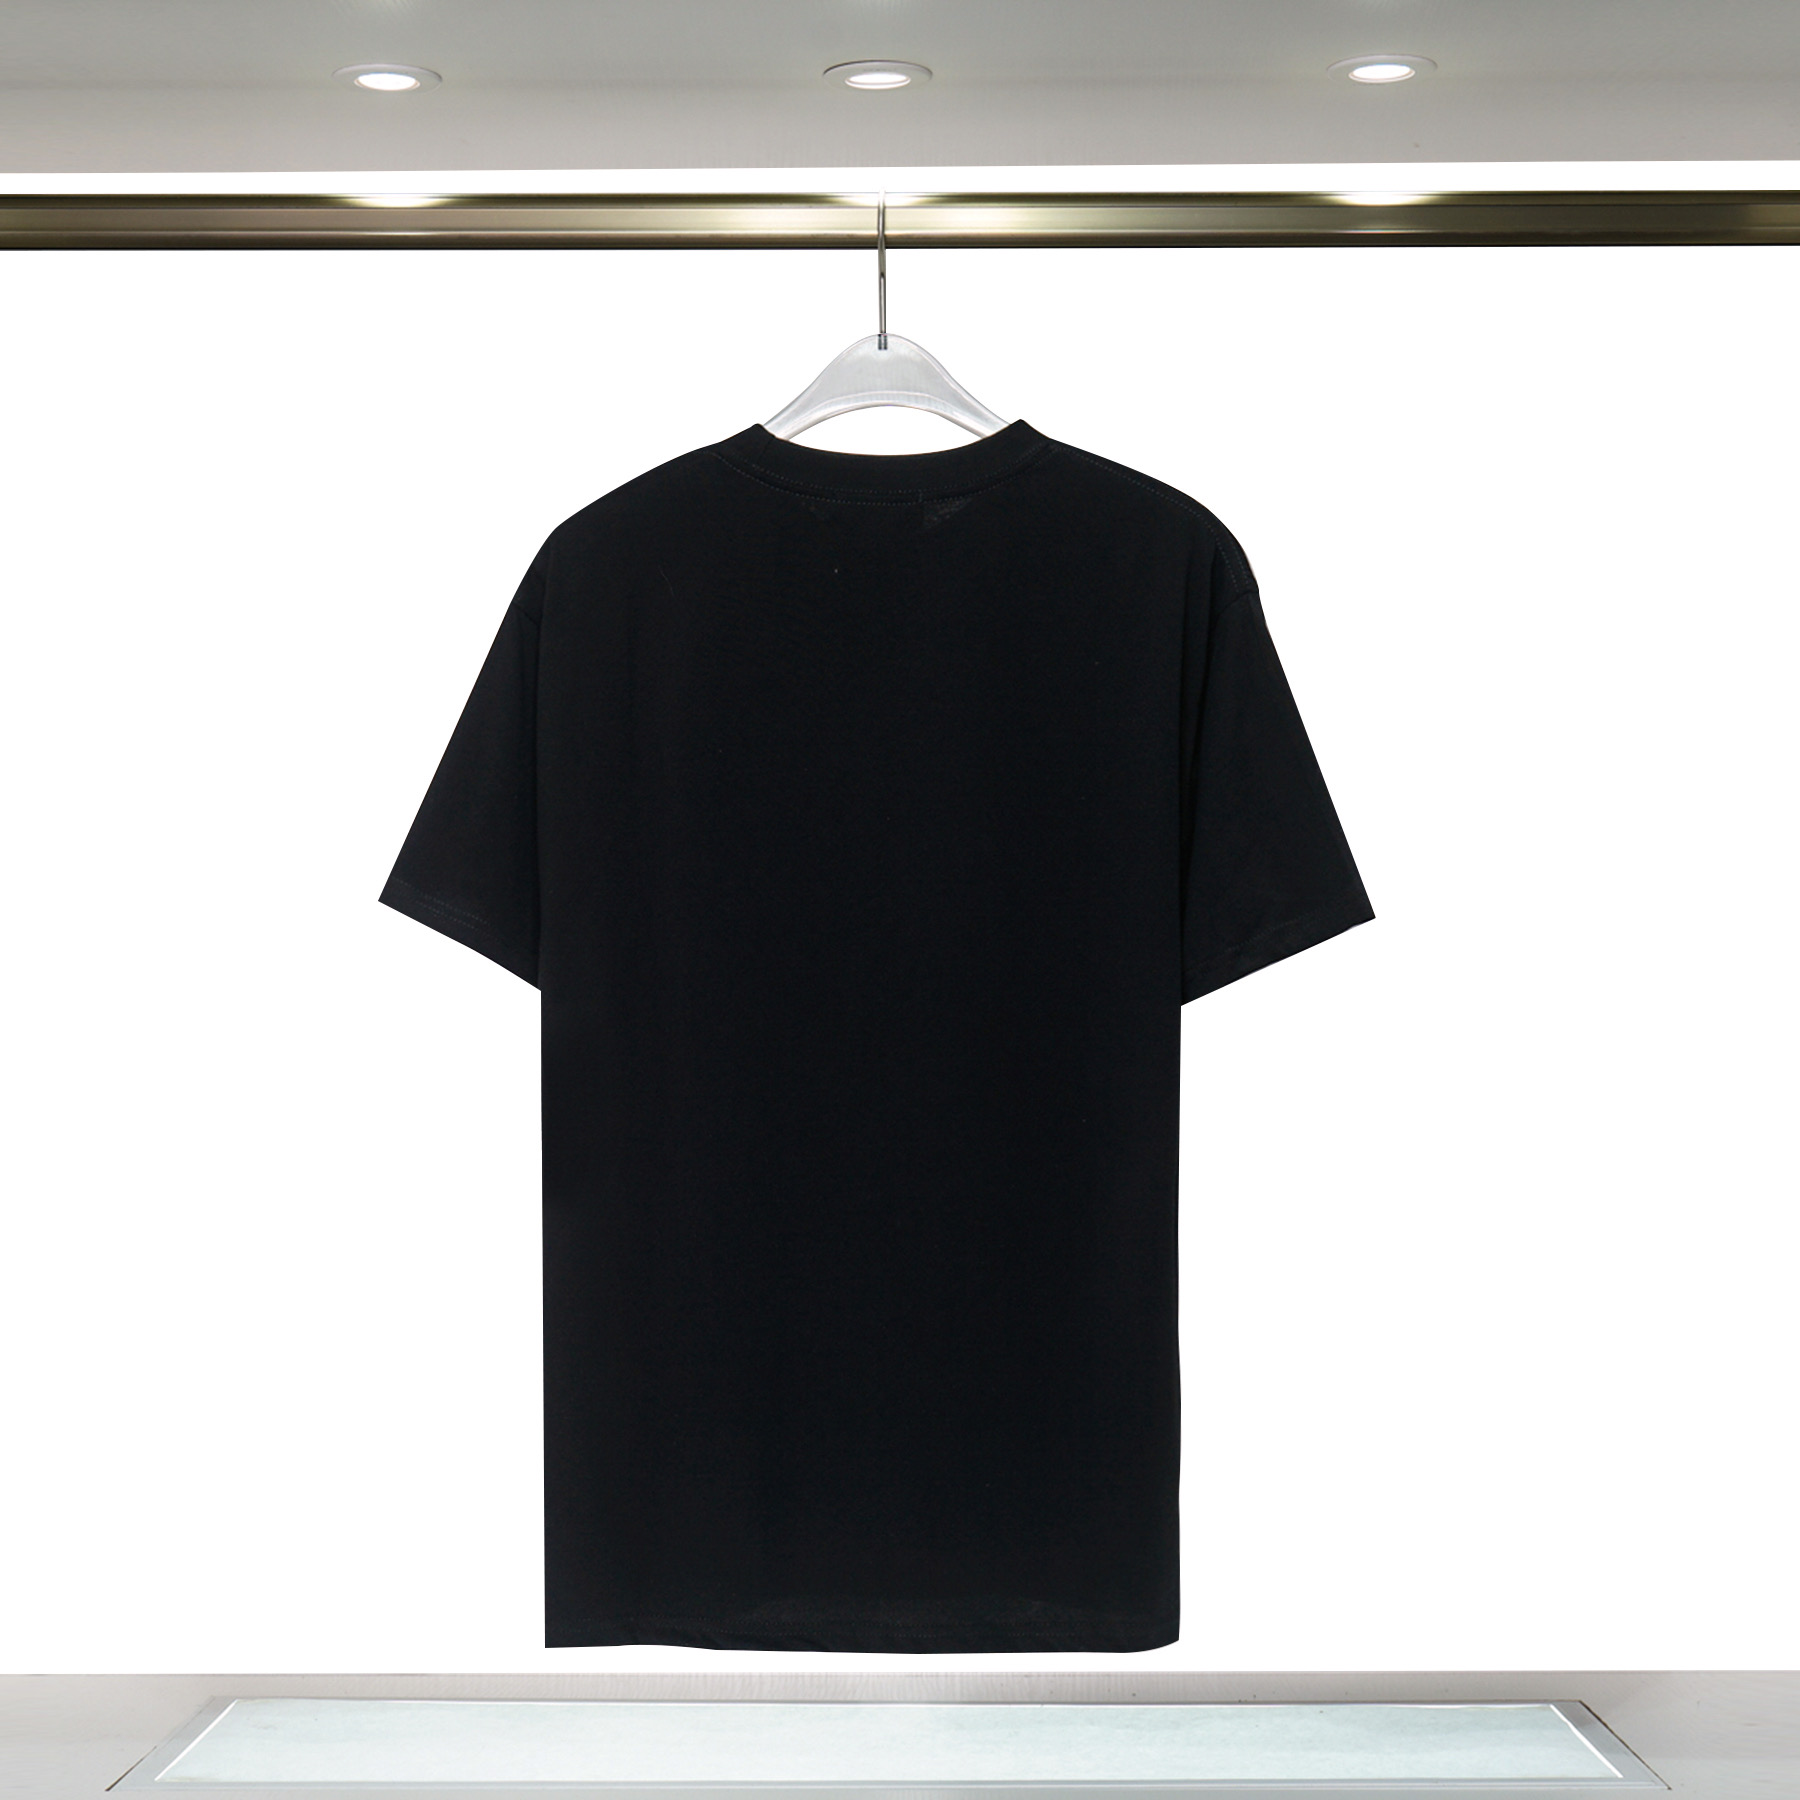 Prada Short Sleeve T Shirts Unisex # 265593, cheap Prada T-shirts Short Sleeved Prada, only $27!